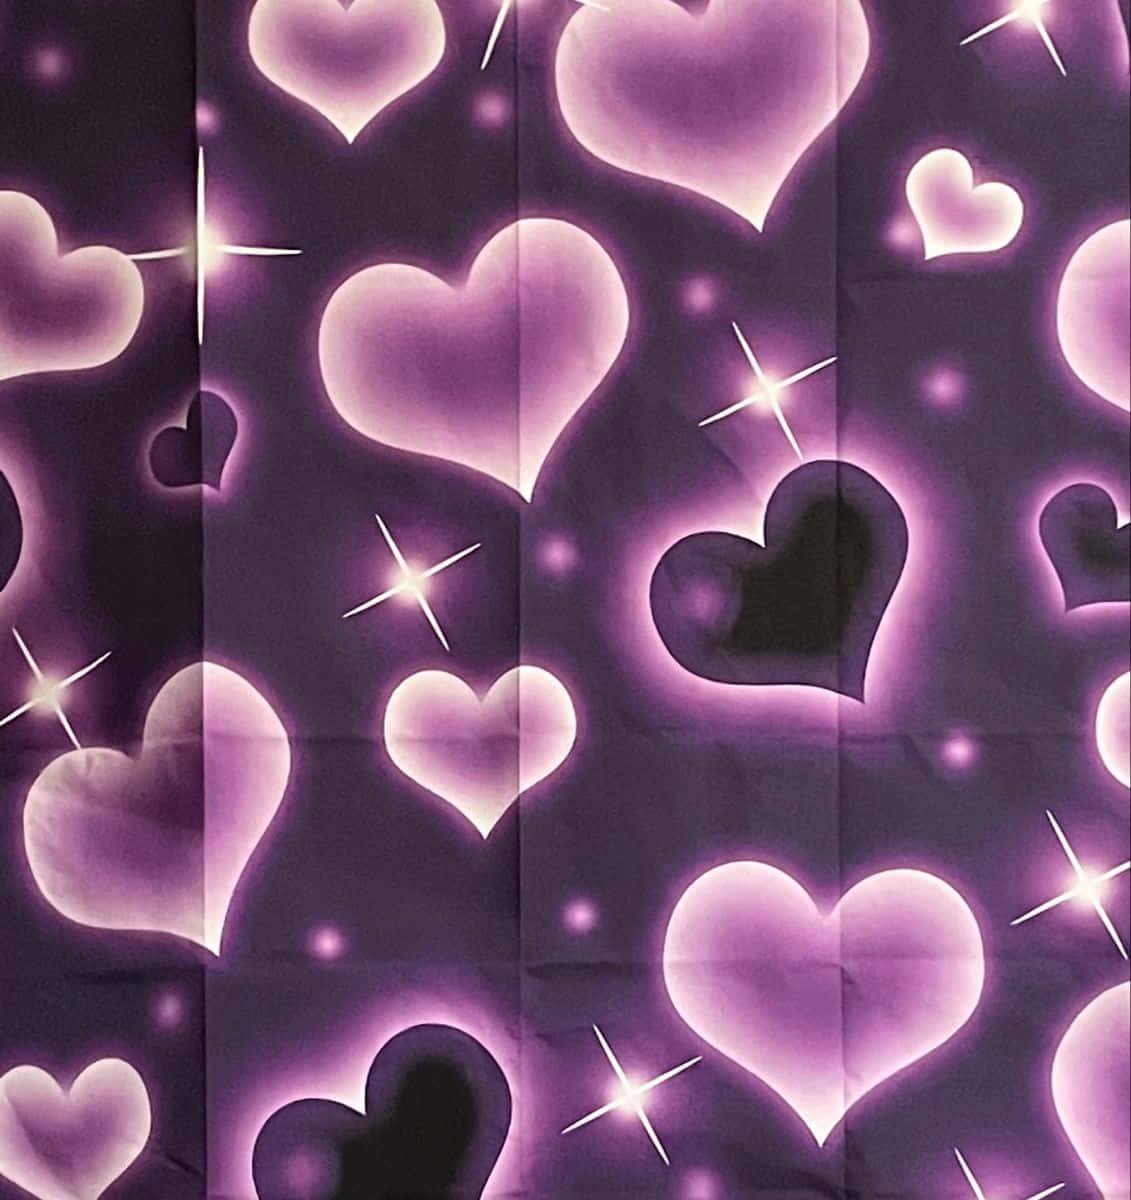 Purple Hearts Lights Y2 K Aesthetic.jpg Wallpaper